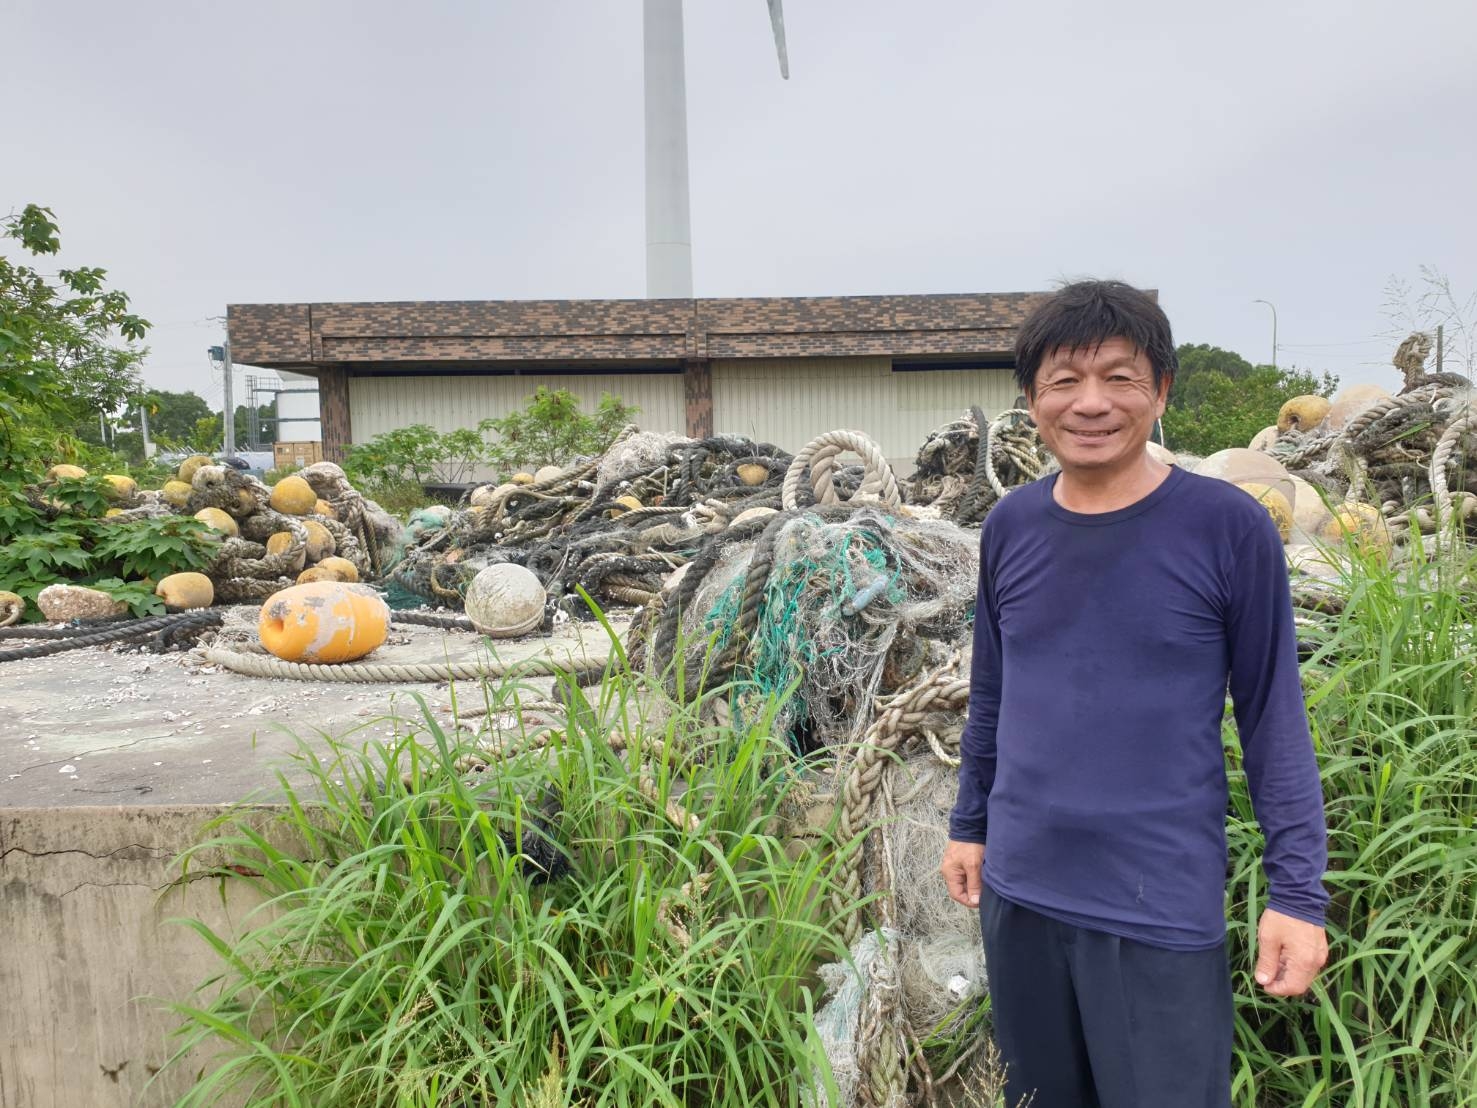 竹市號召百艘漁船組「環保艦隊」 年清3千公斤海洋廢棄物獲大獎肯定小圖共6張，pic2